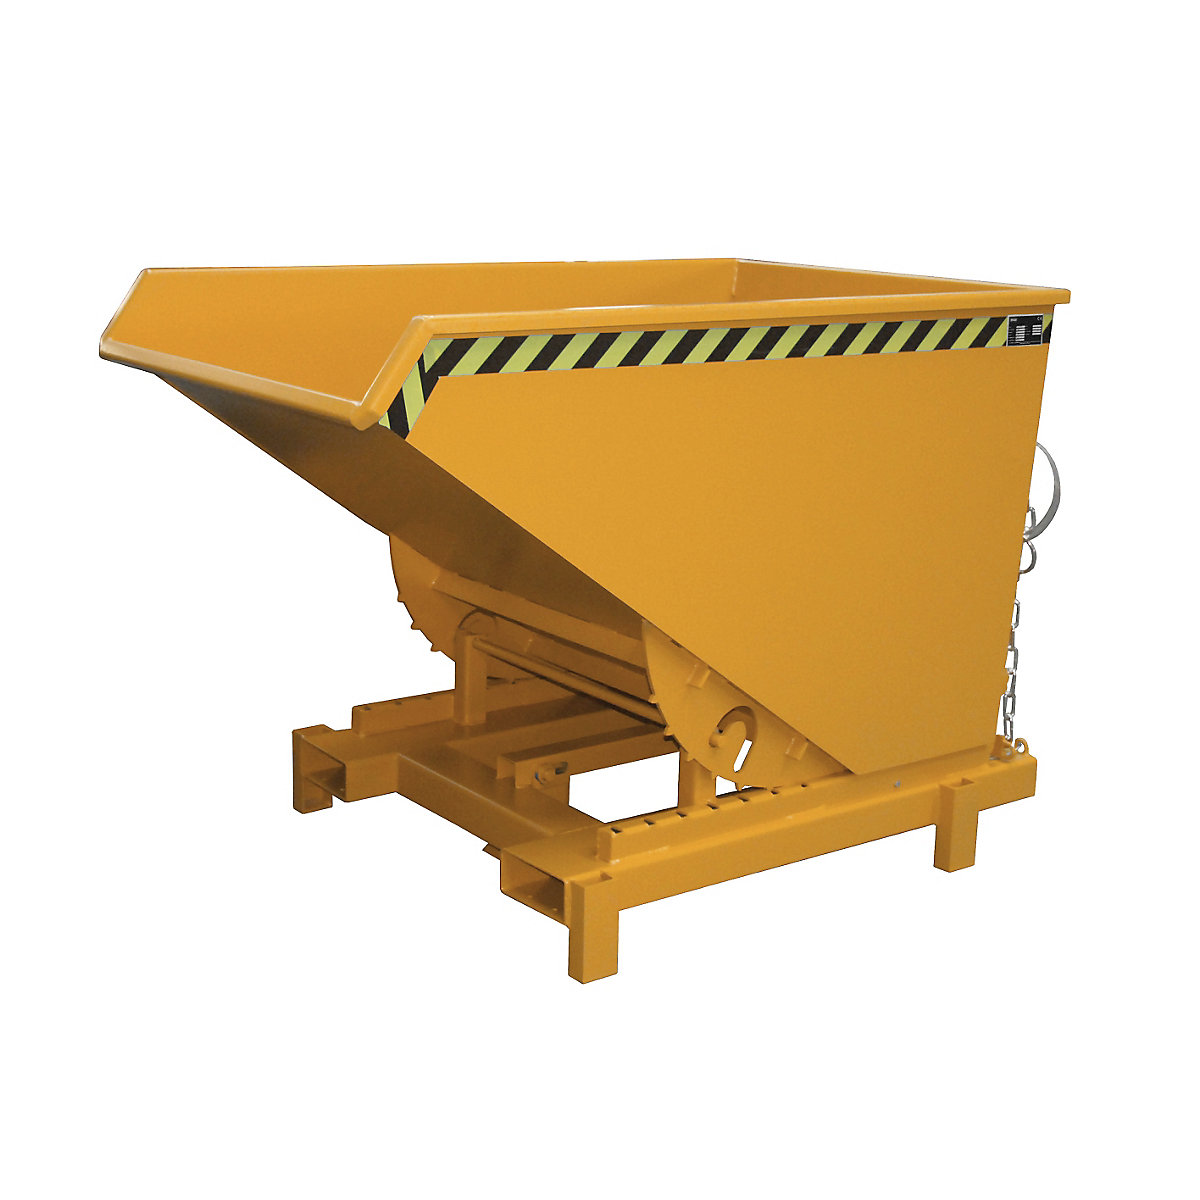 Nagibni spremnik za teške terete – eurokraft pro, volumen 0,6 m³, nosivost 4000 kg, u narančastoj boji RAL 2000-12